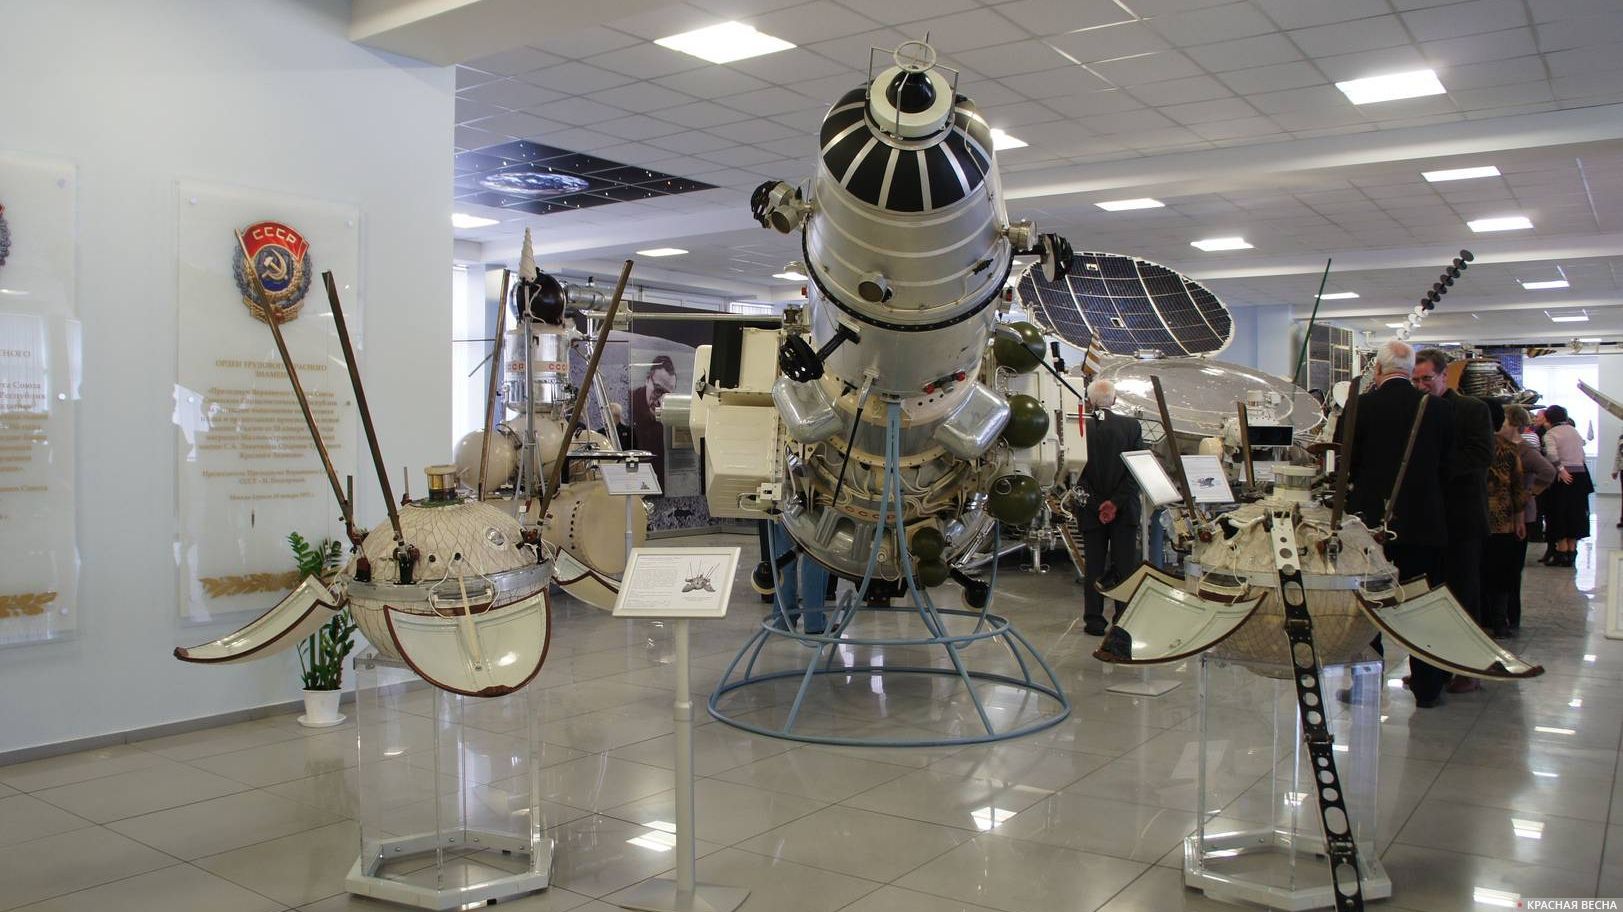 Автоматические межпланетные станции «Луна — 9», «Луна — 10» и «Луна — 13». Музей НПО им. С. А. Лавочкина